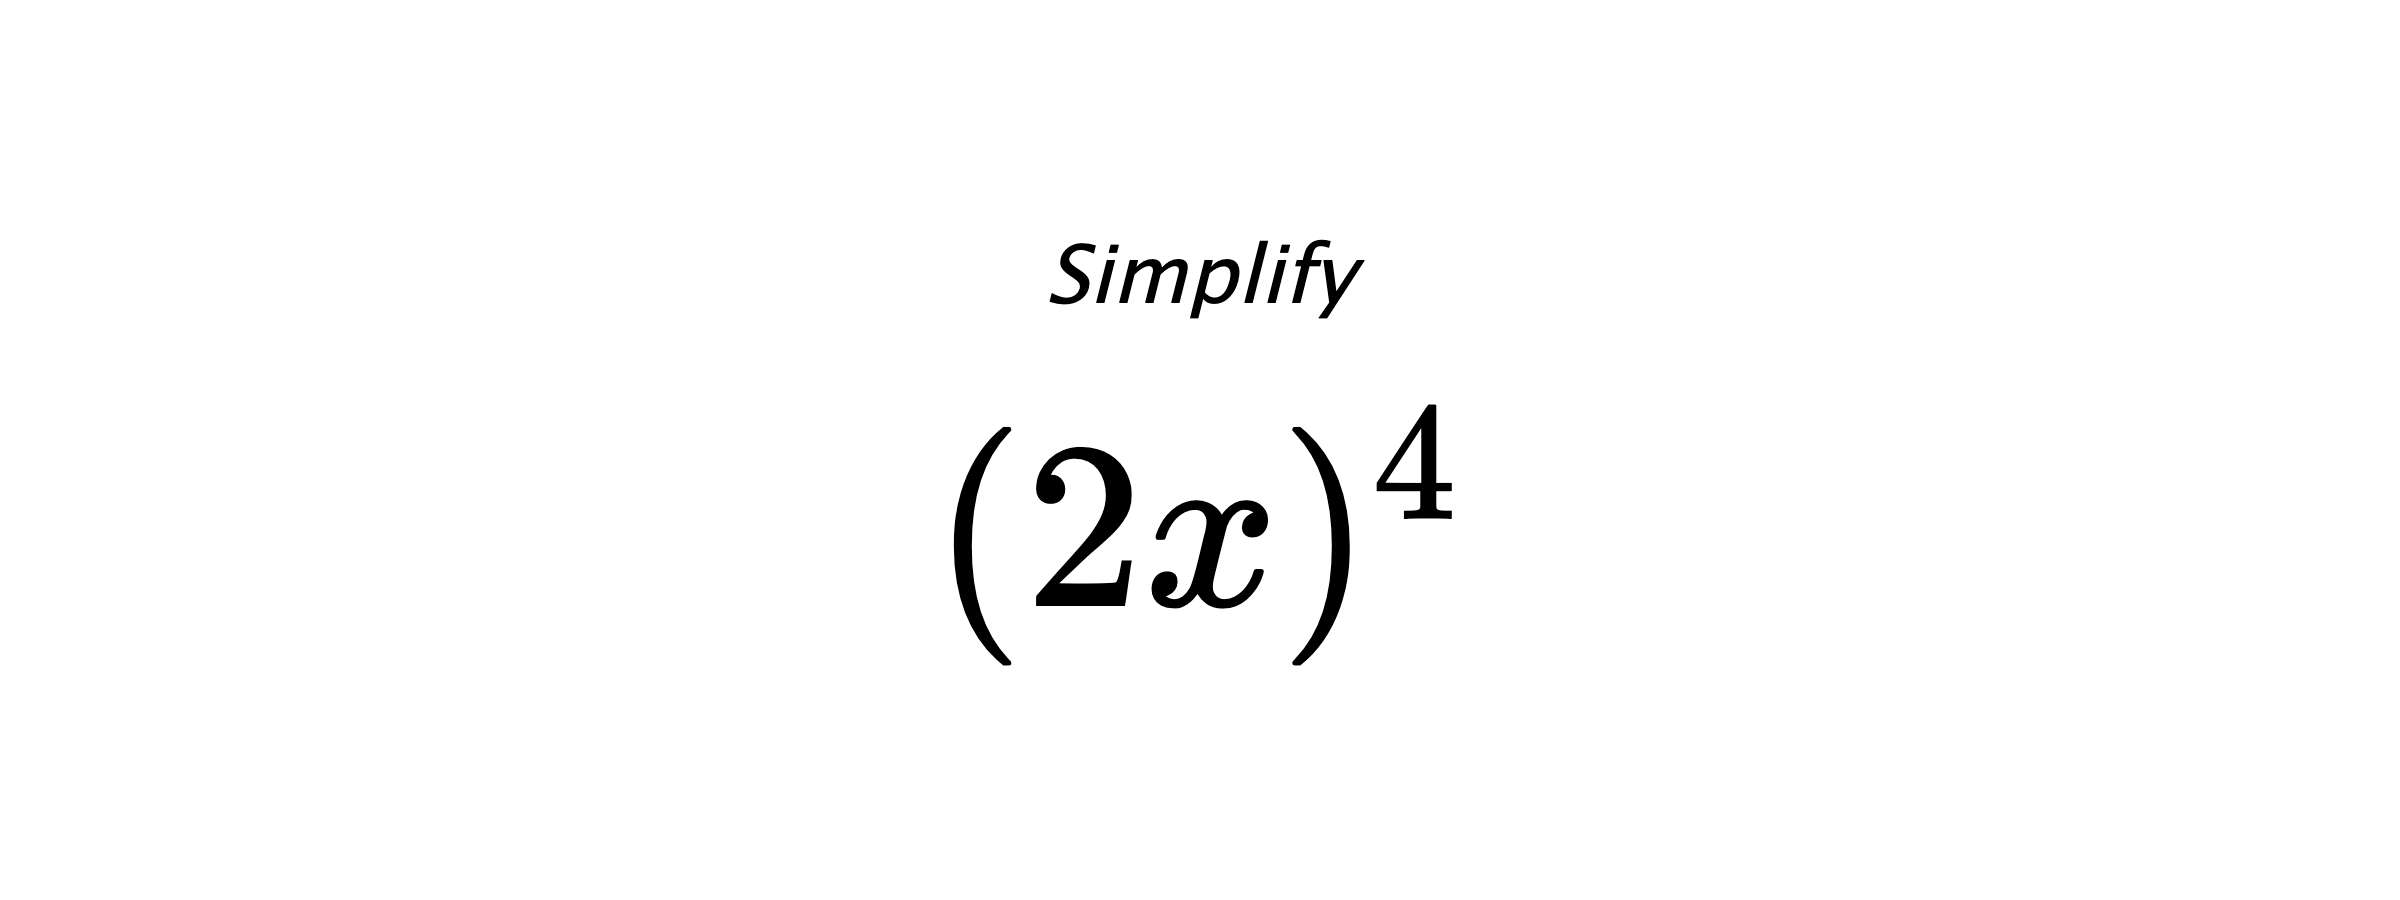 Simplify $ (2x)^4 $